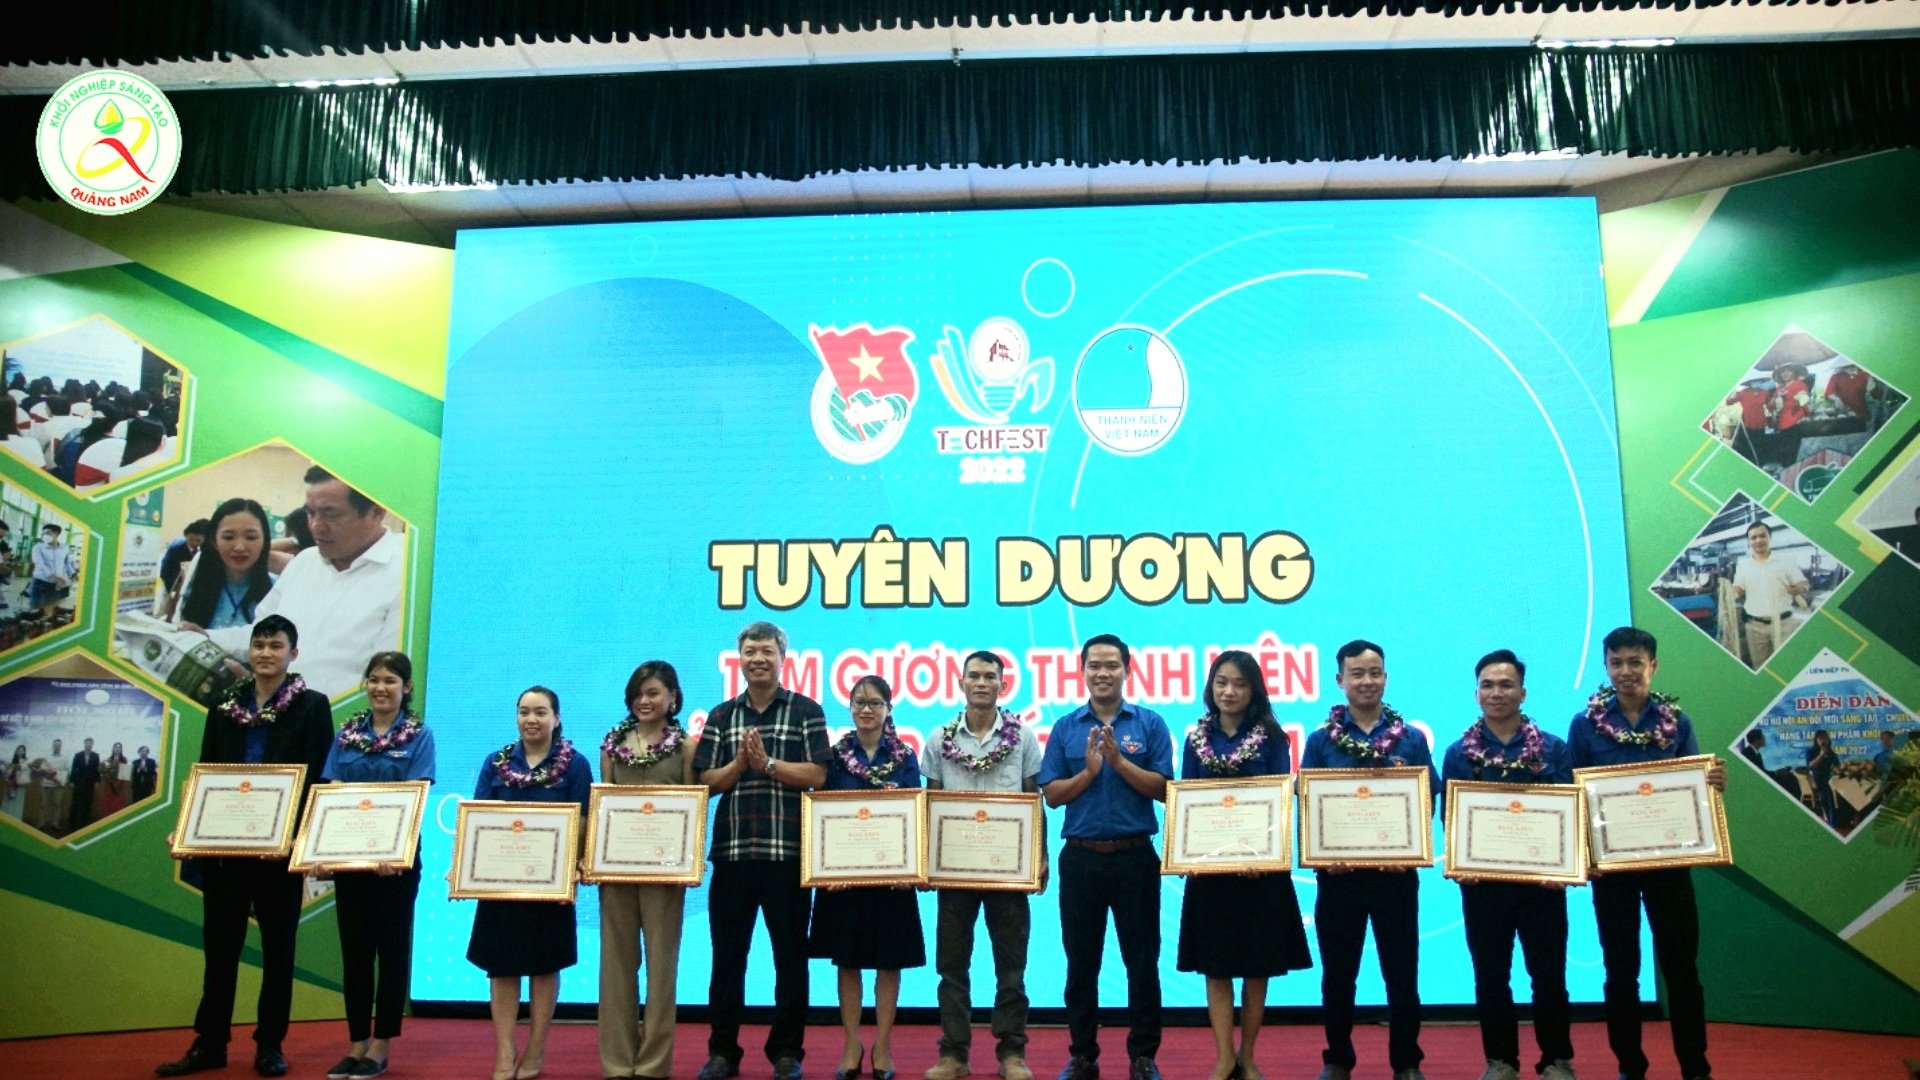 Đồng chí Hồ Quang Bửu – Phó Chủ tịch UBND tỉnh  tuyên dương, trao thưởng cho thanh niên khởi nghiệp tiêu biểu